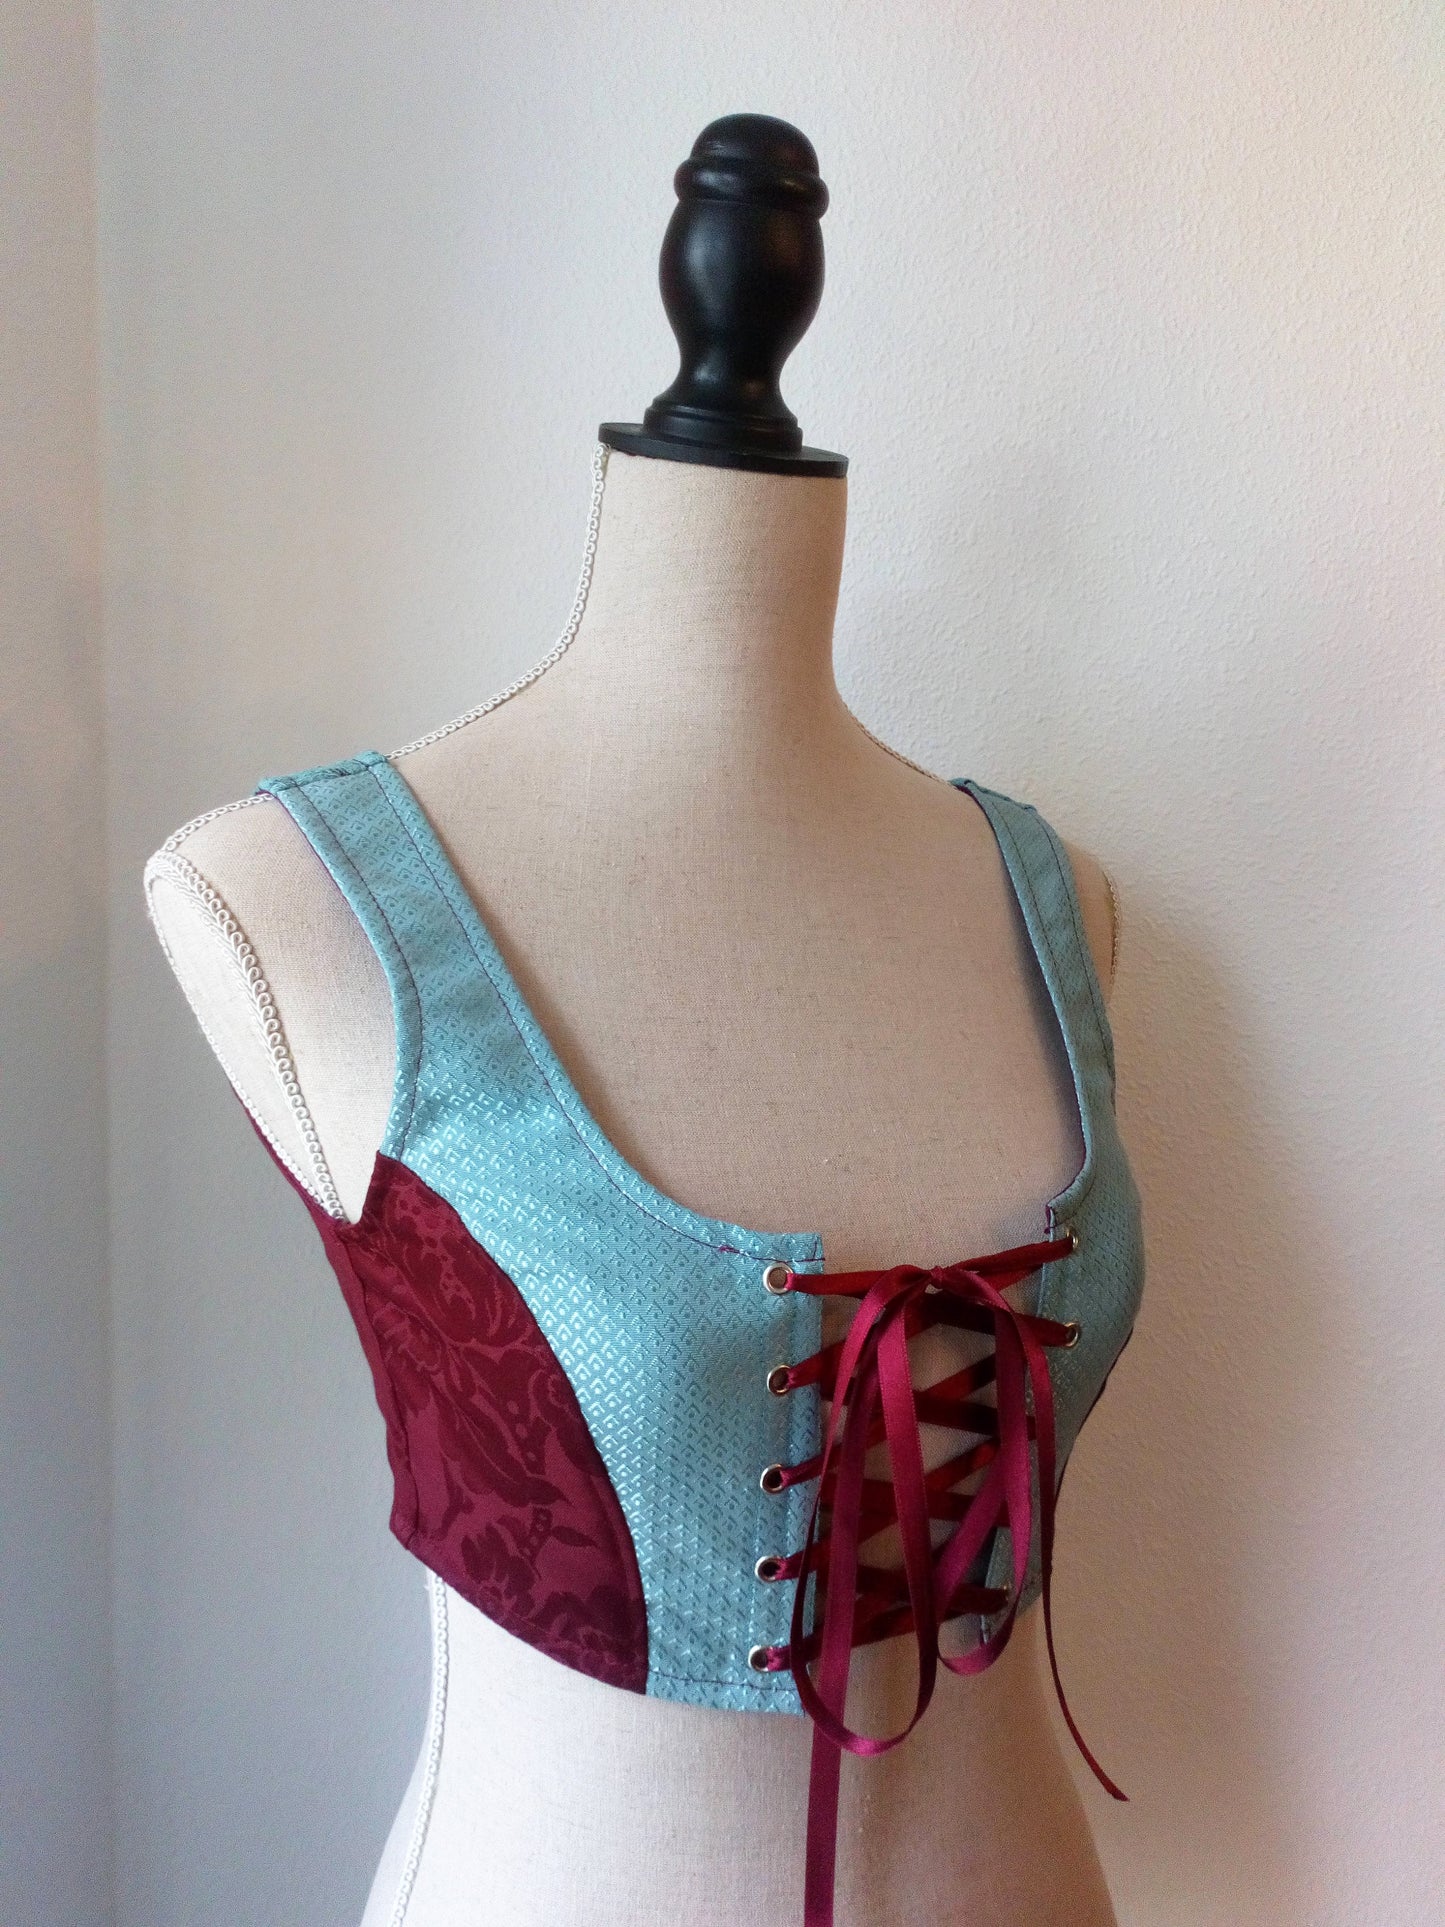 Pixie short corset vest